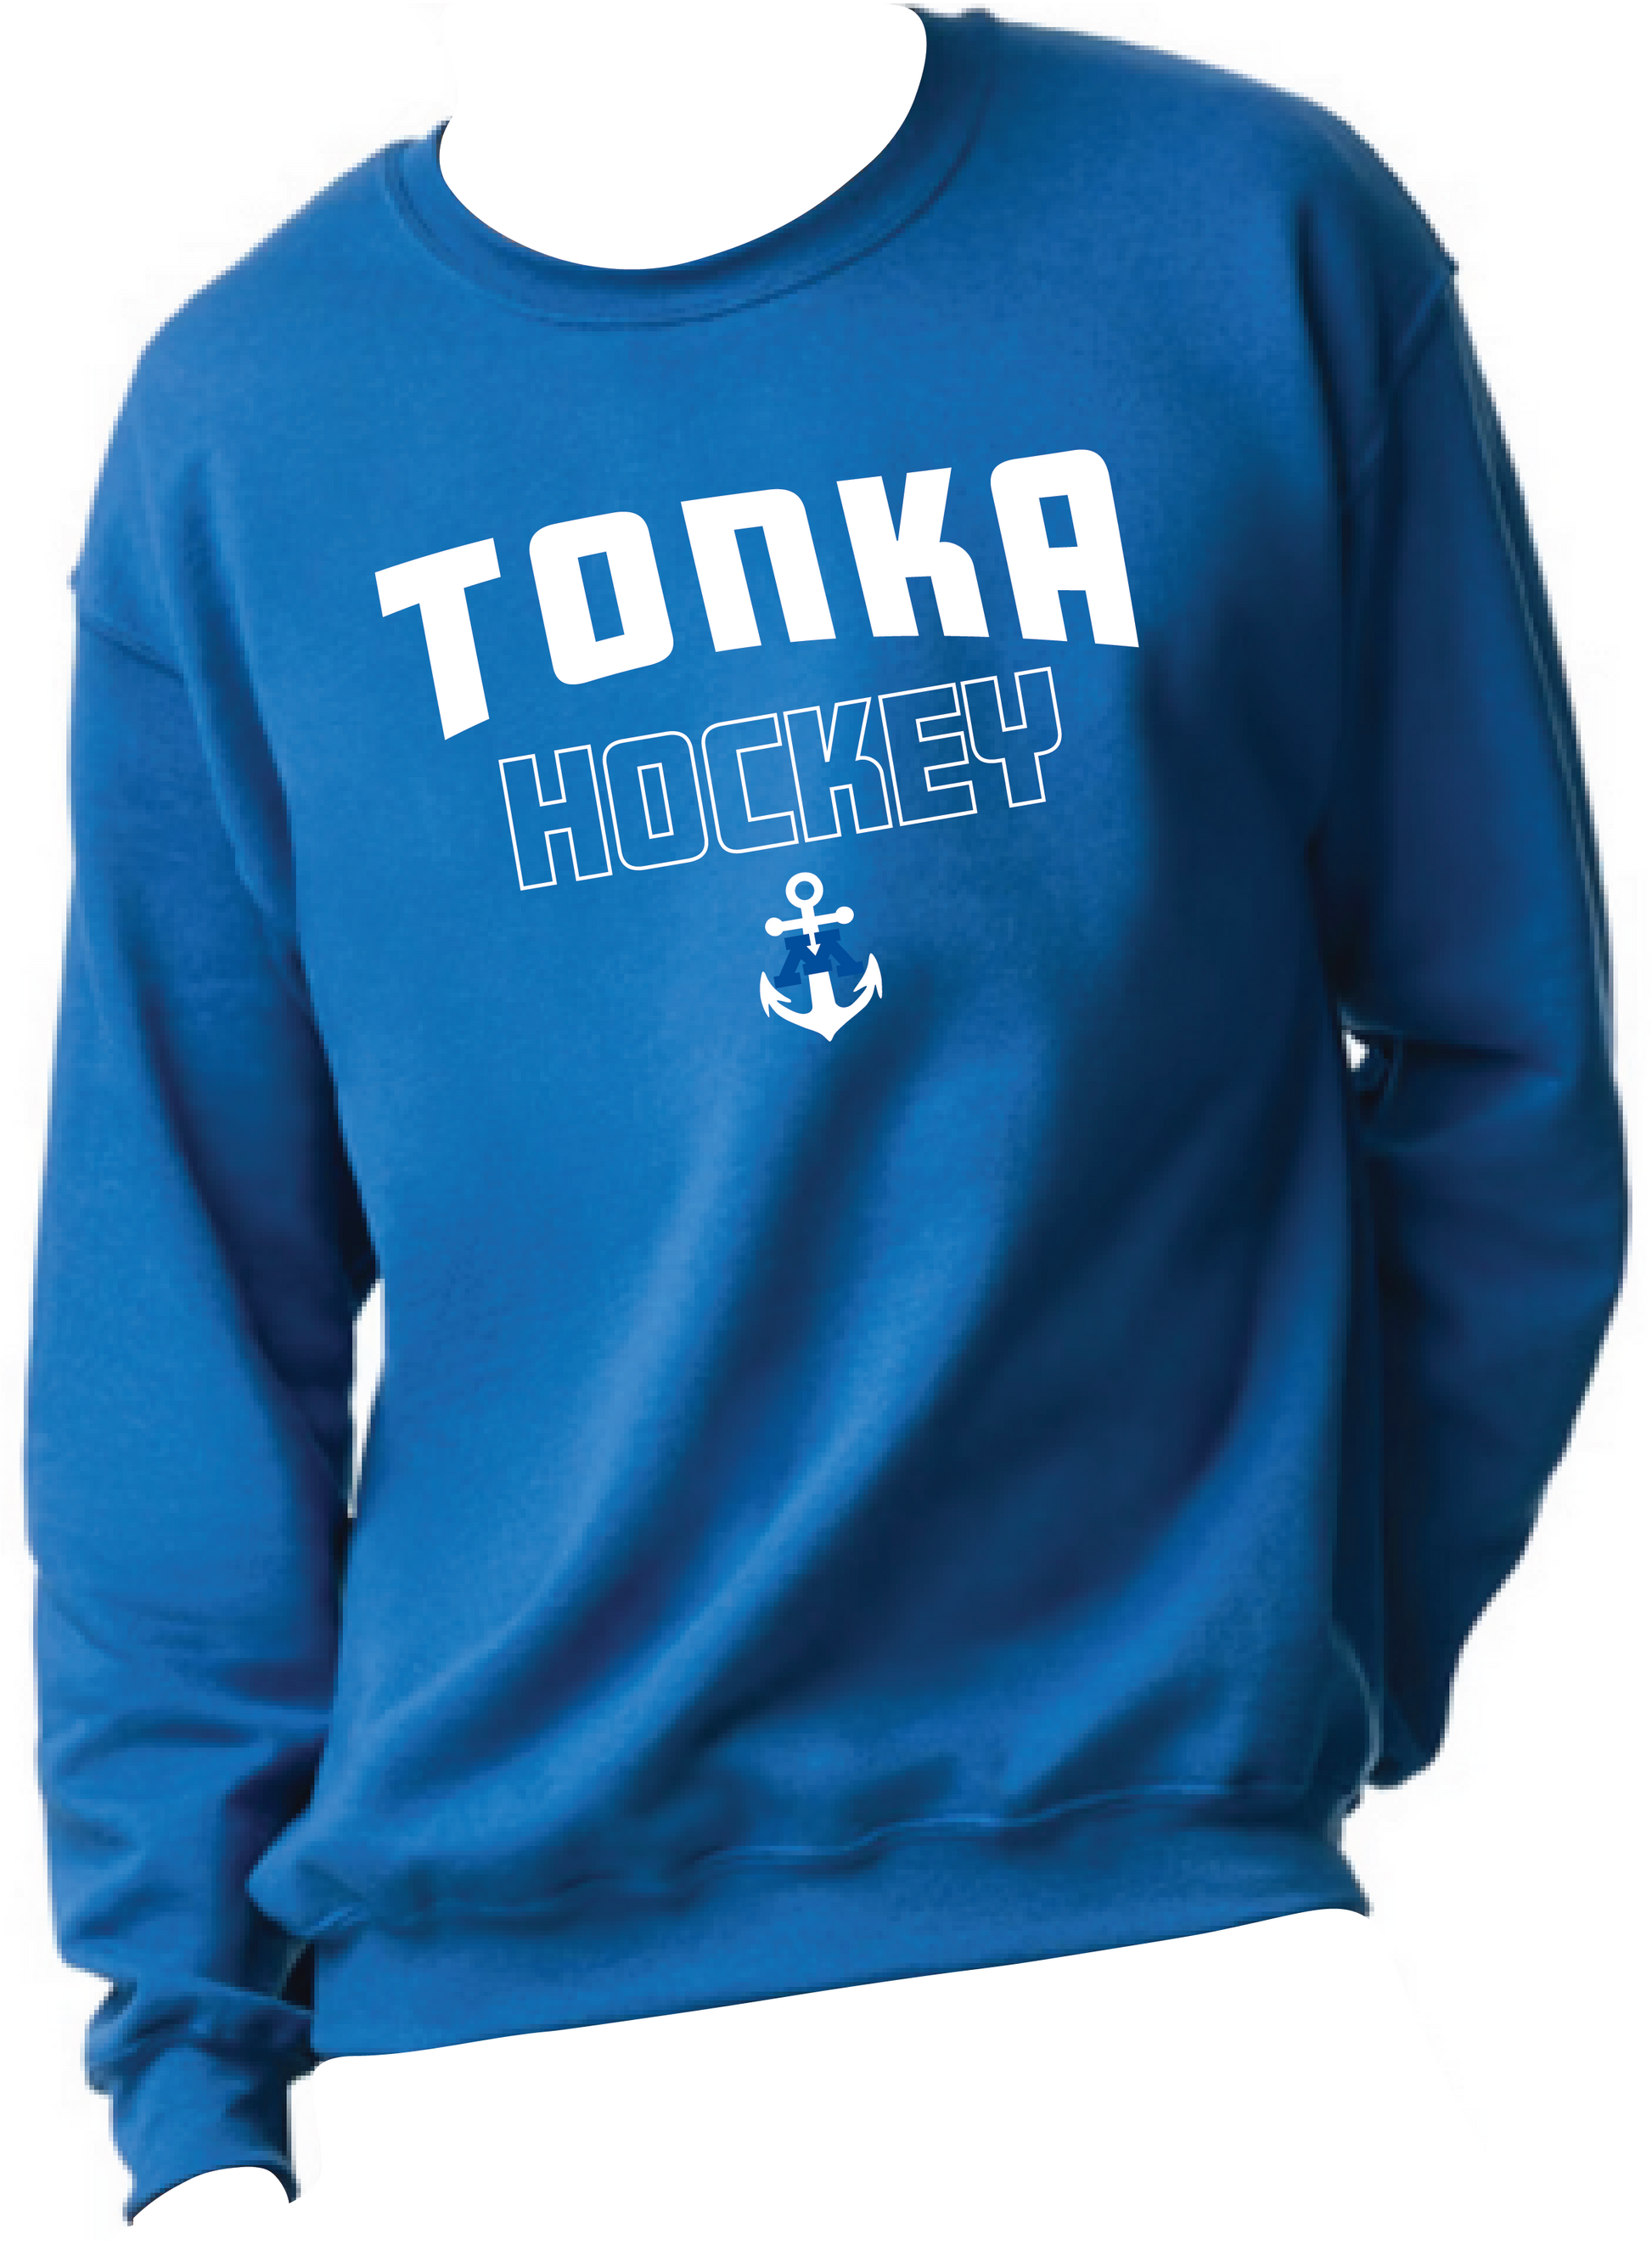 Tonka Hockey Small Anchor Royal